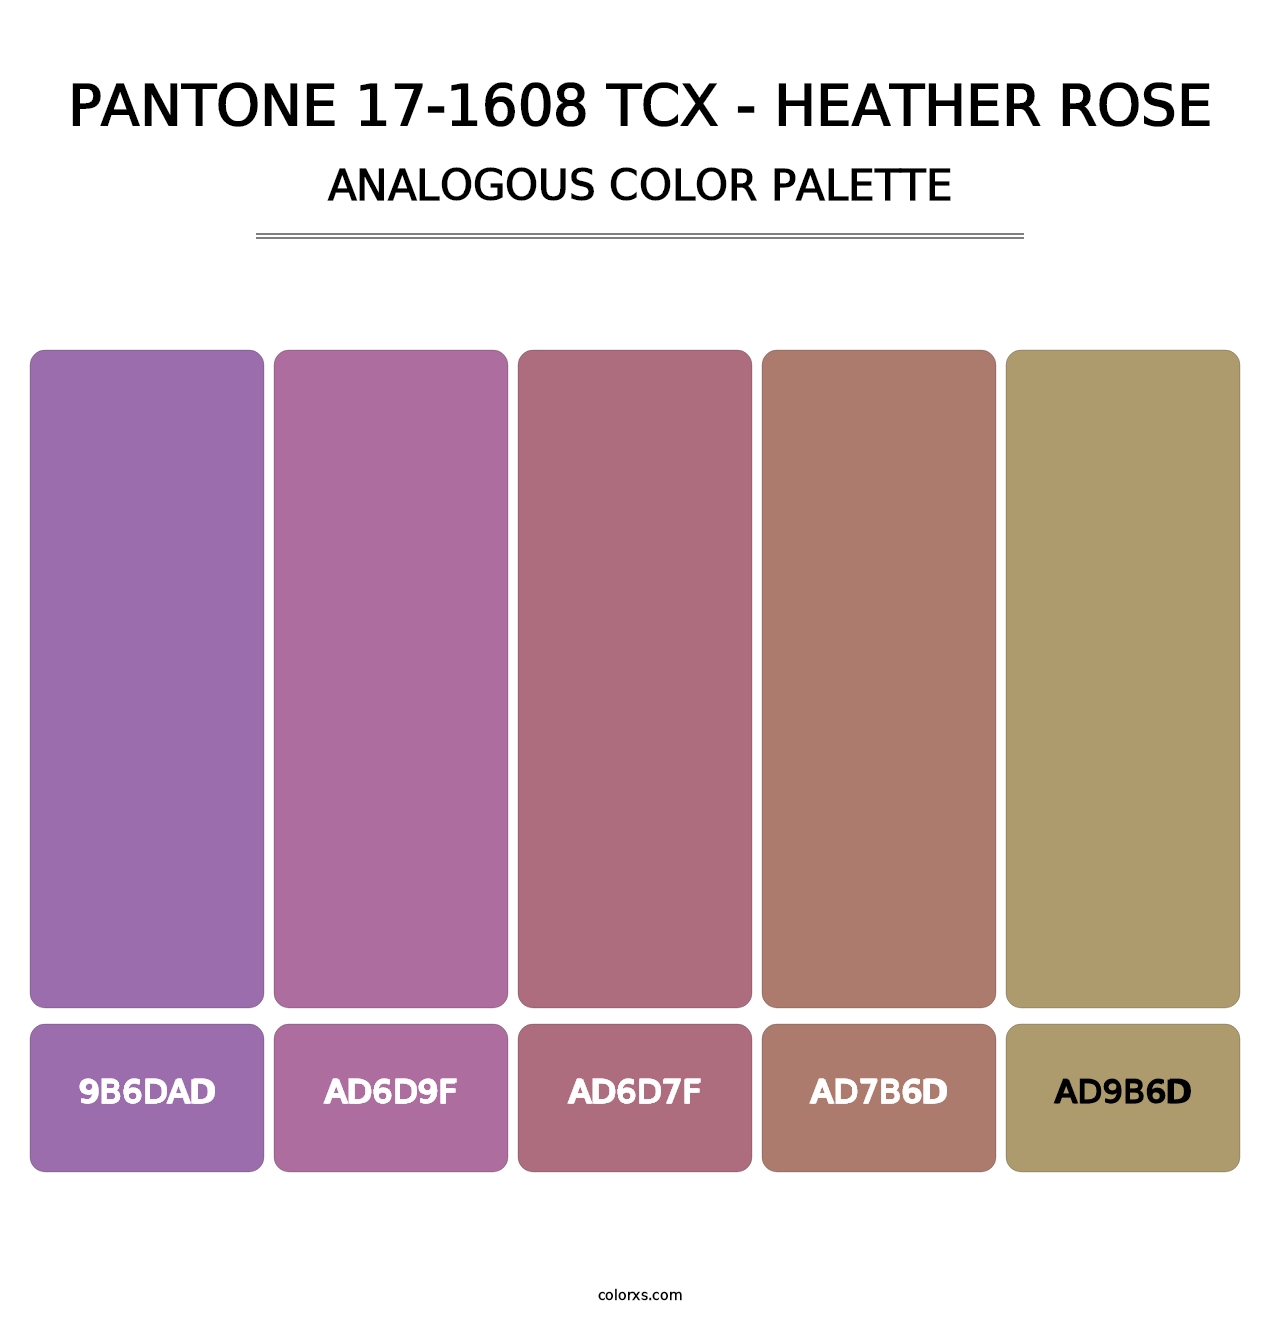 PANTONE 17-1608 TCX - Heather Rose - Analogous Color Palette